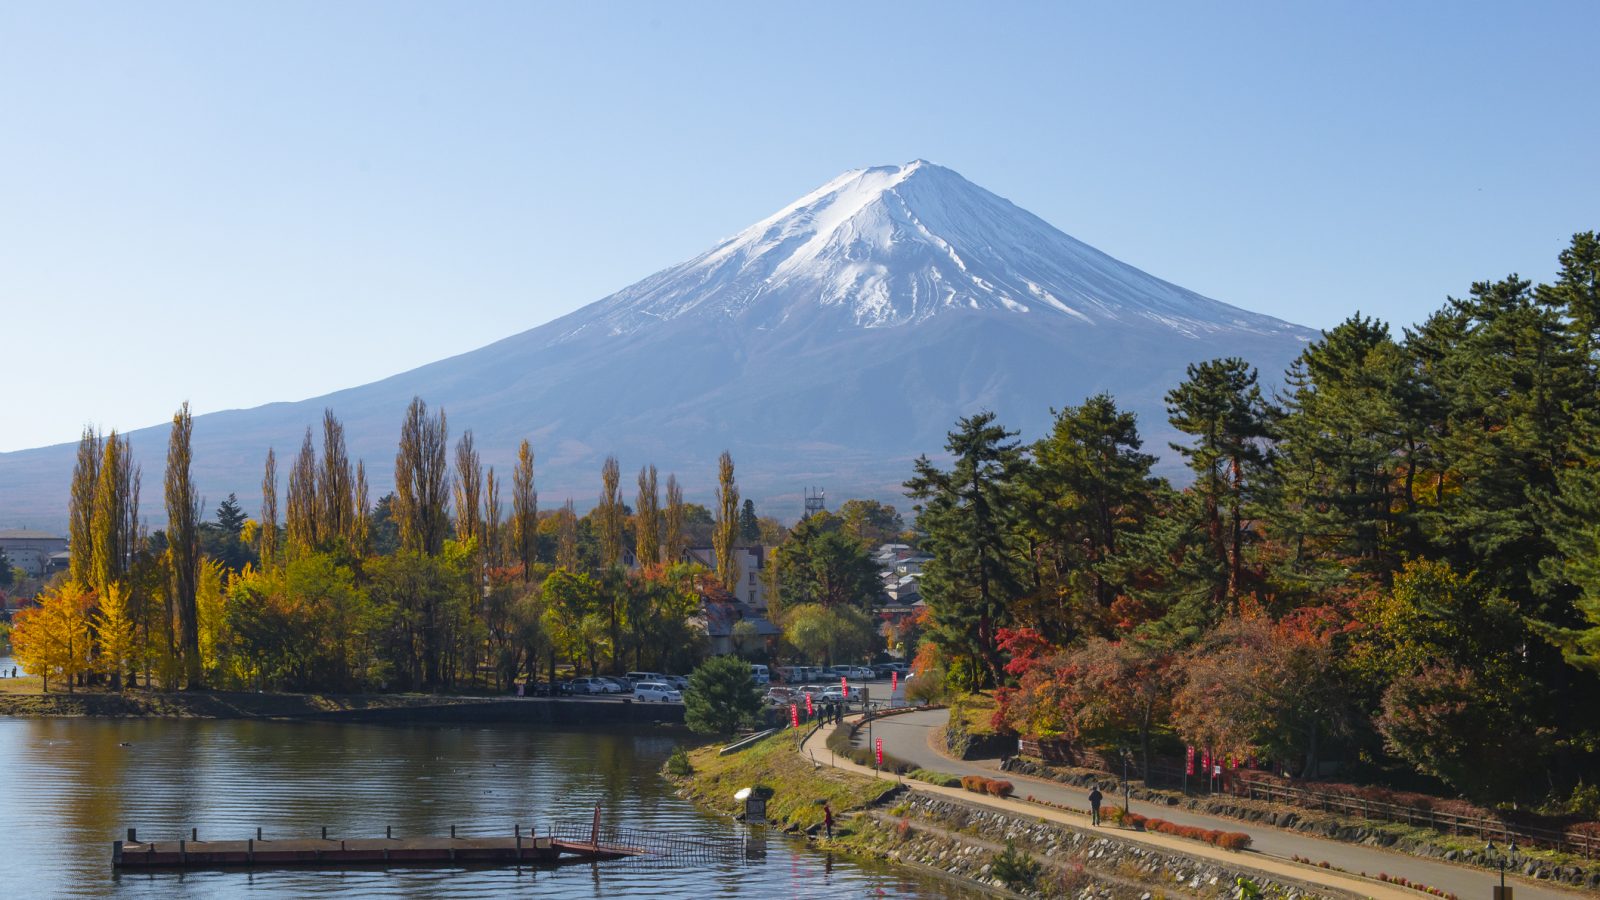 英紙が富士山の“オーバーツーリズム”と“弾丸登山”を問題視「ここは神聖な山なのに」 | 外国人観光客も夢見る富士登山